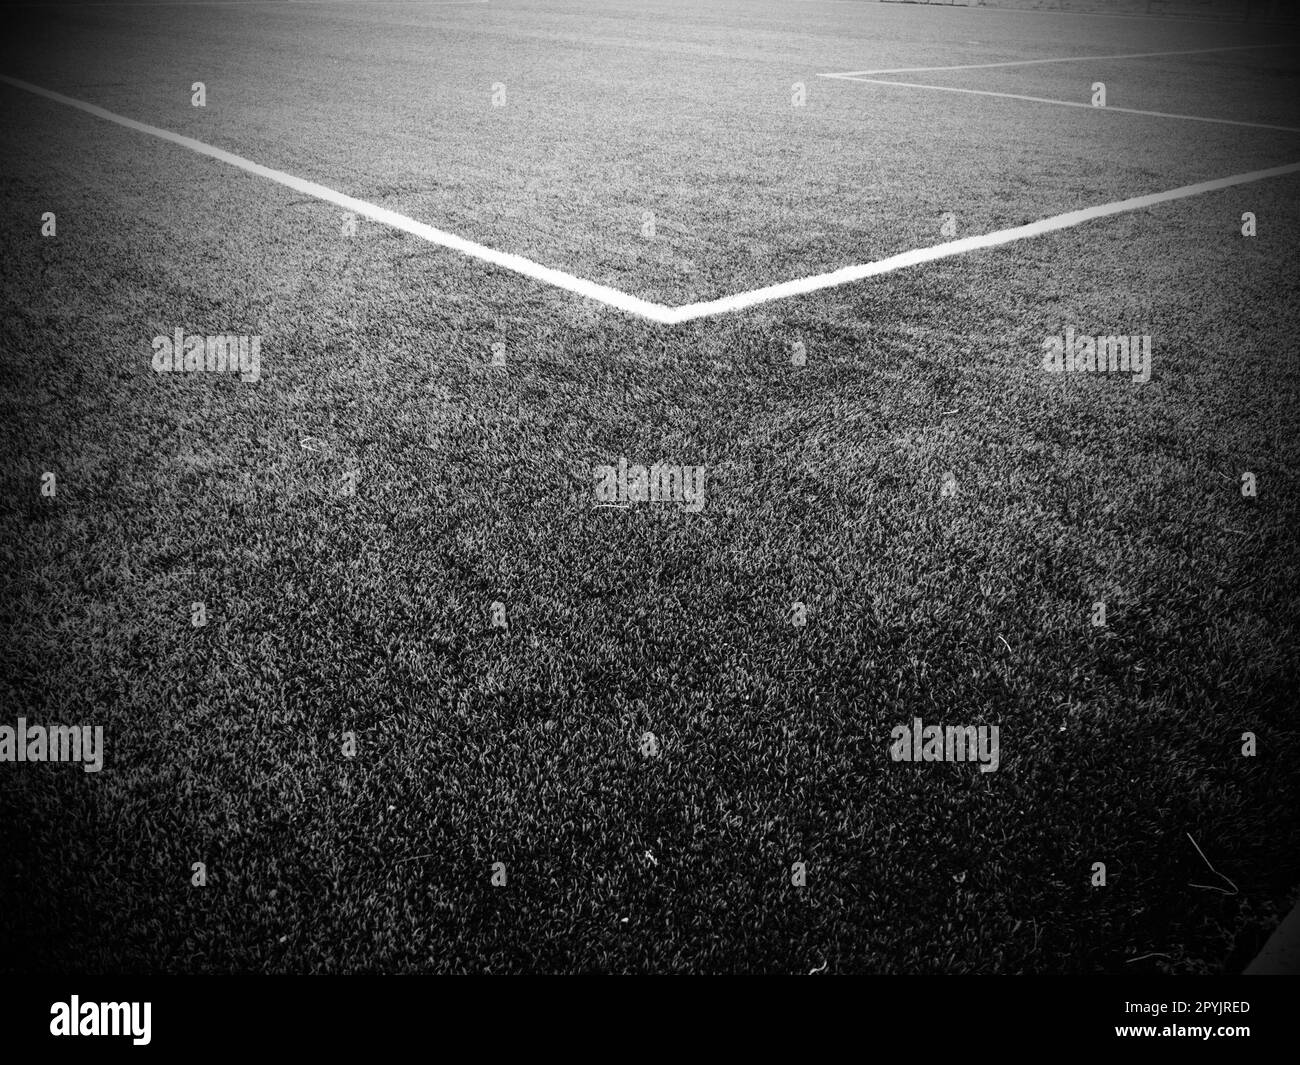 La marcatura del campo di calcio. Righe bianche larghe non più di 12 cm. Area del campo da football. Fotografia monocromatica in bianco e nero Foto Stock